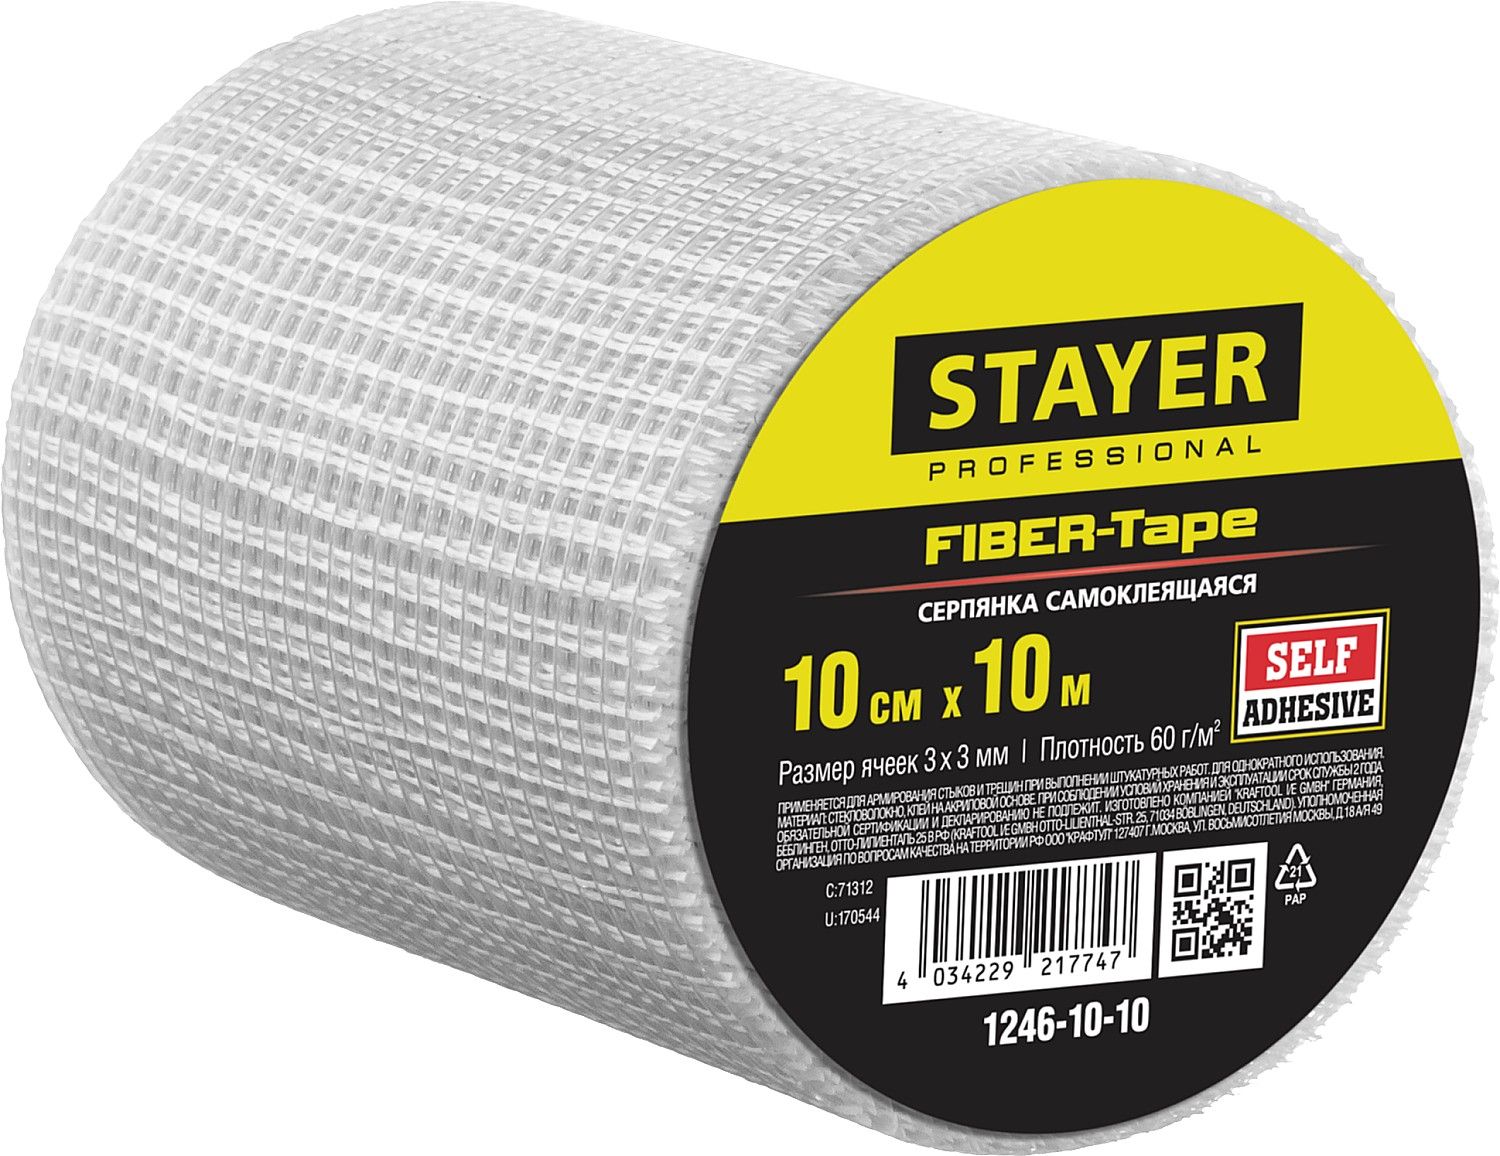 фото Серпянка самоклеящаяся fiber-tape, 10 см х 10м, stayer professional 1246-10-10